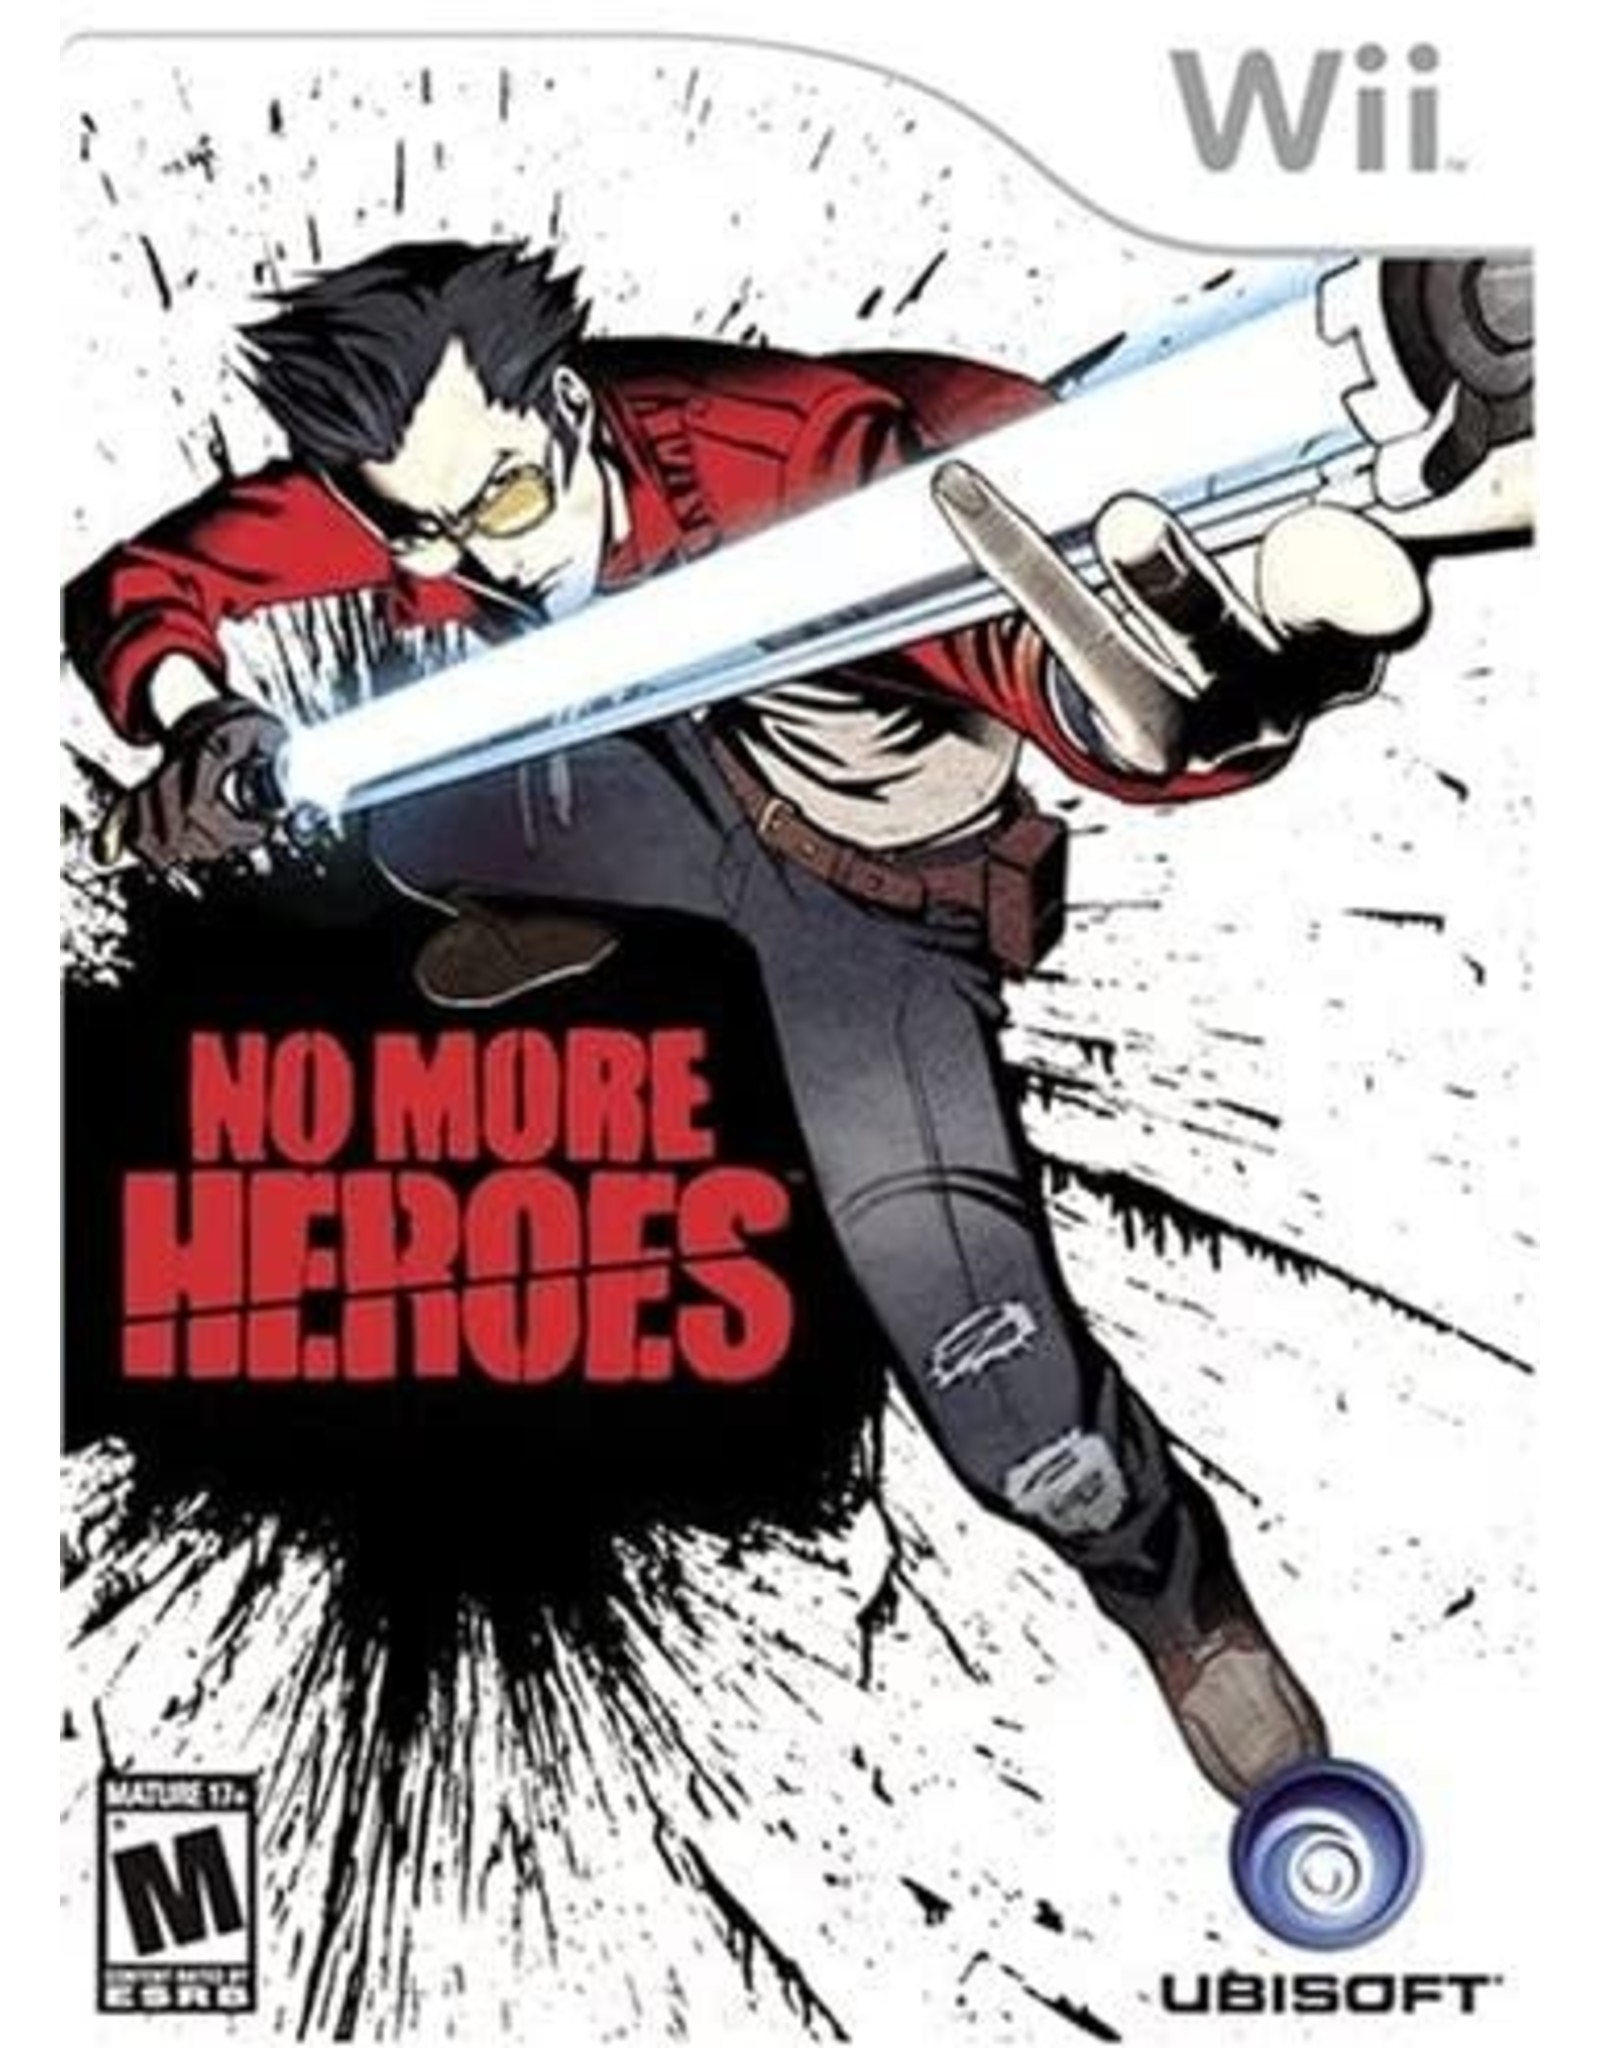 Wii No More Heroes (CiB)